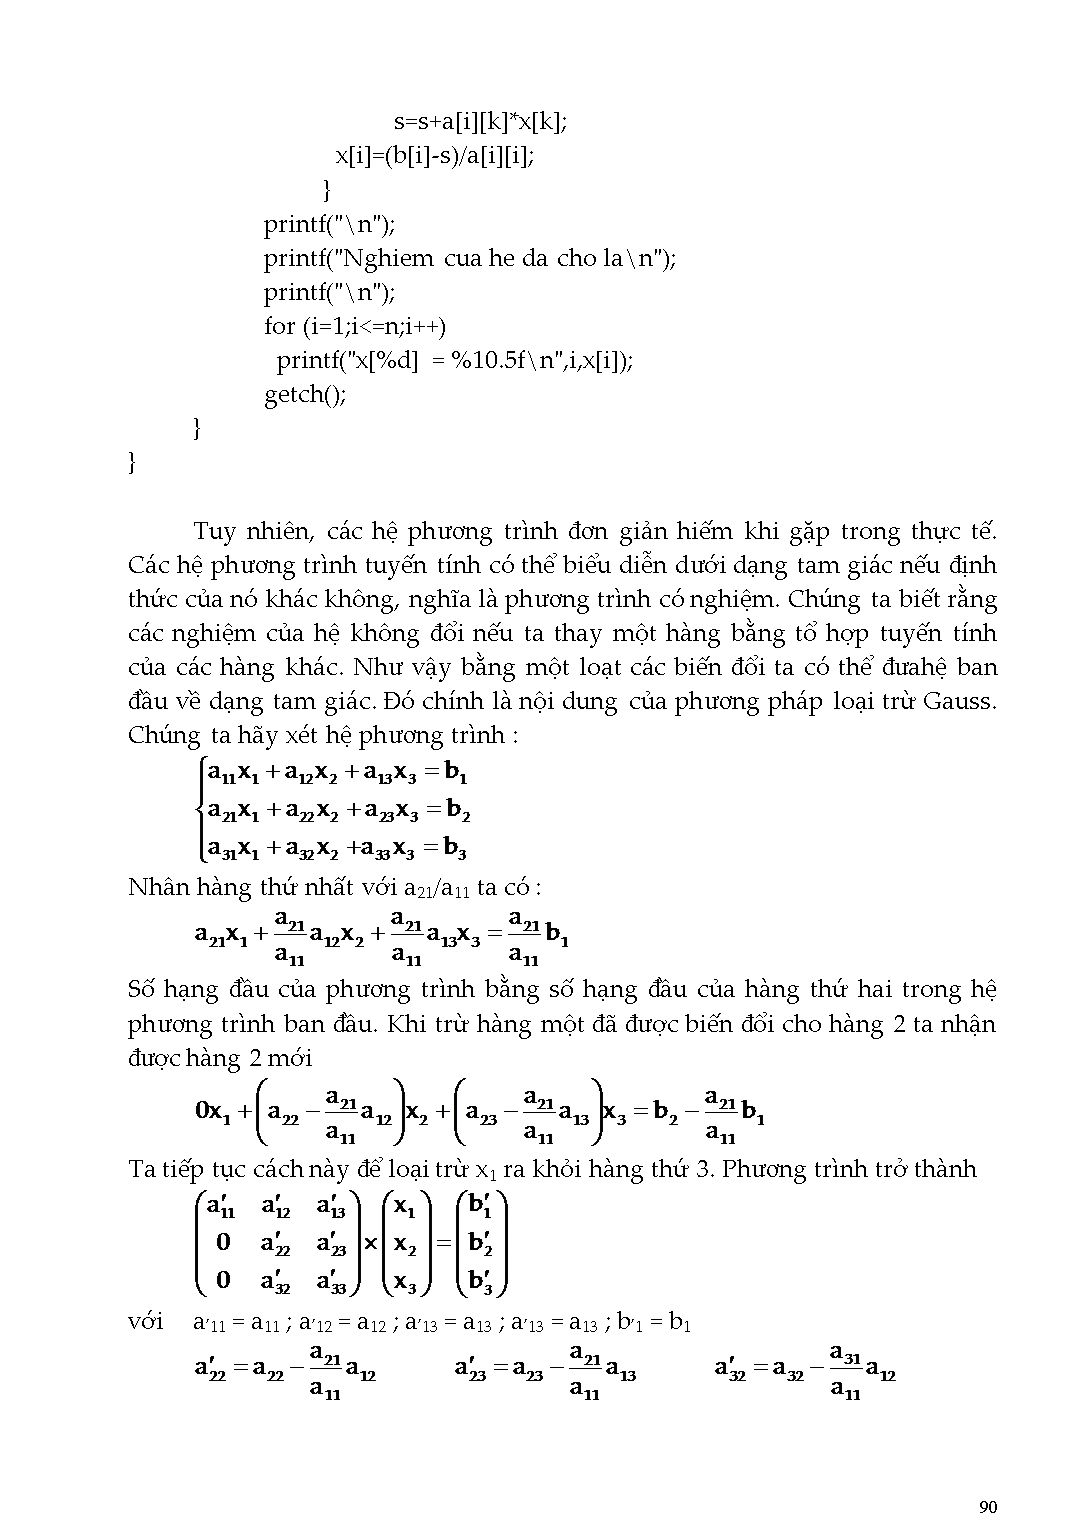 Giáo trình Phương pháp tính - Chương 4: Giải hệ phương trình đại số tuyến tính trang 8